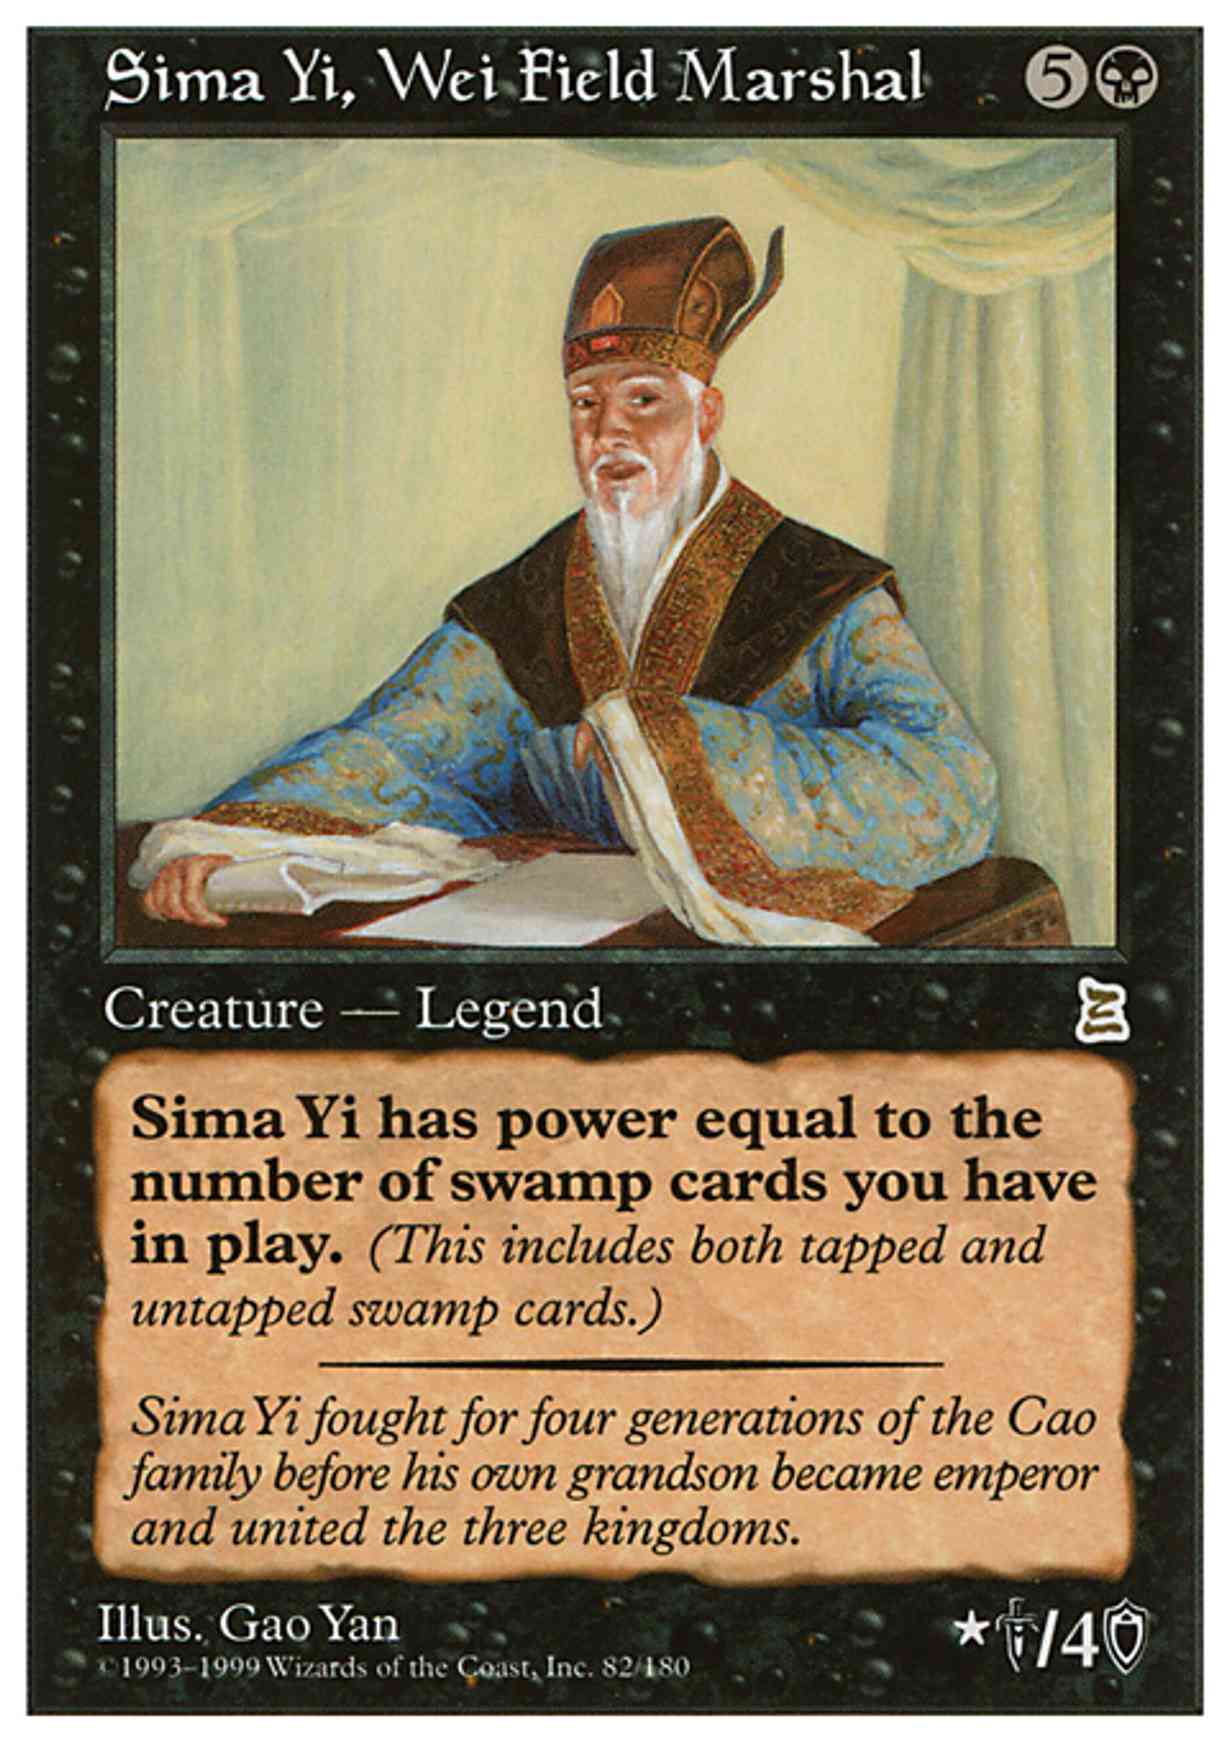 Sima Yi, Wei Field Marshal magic card front